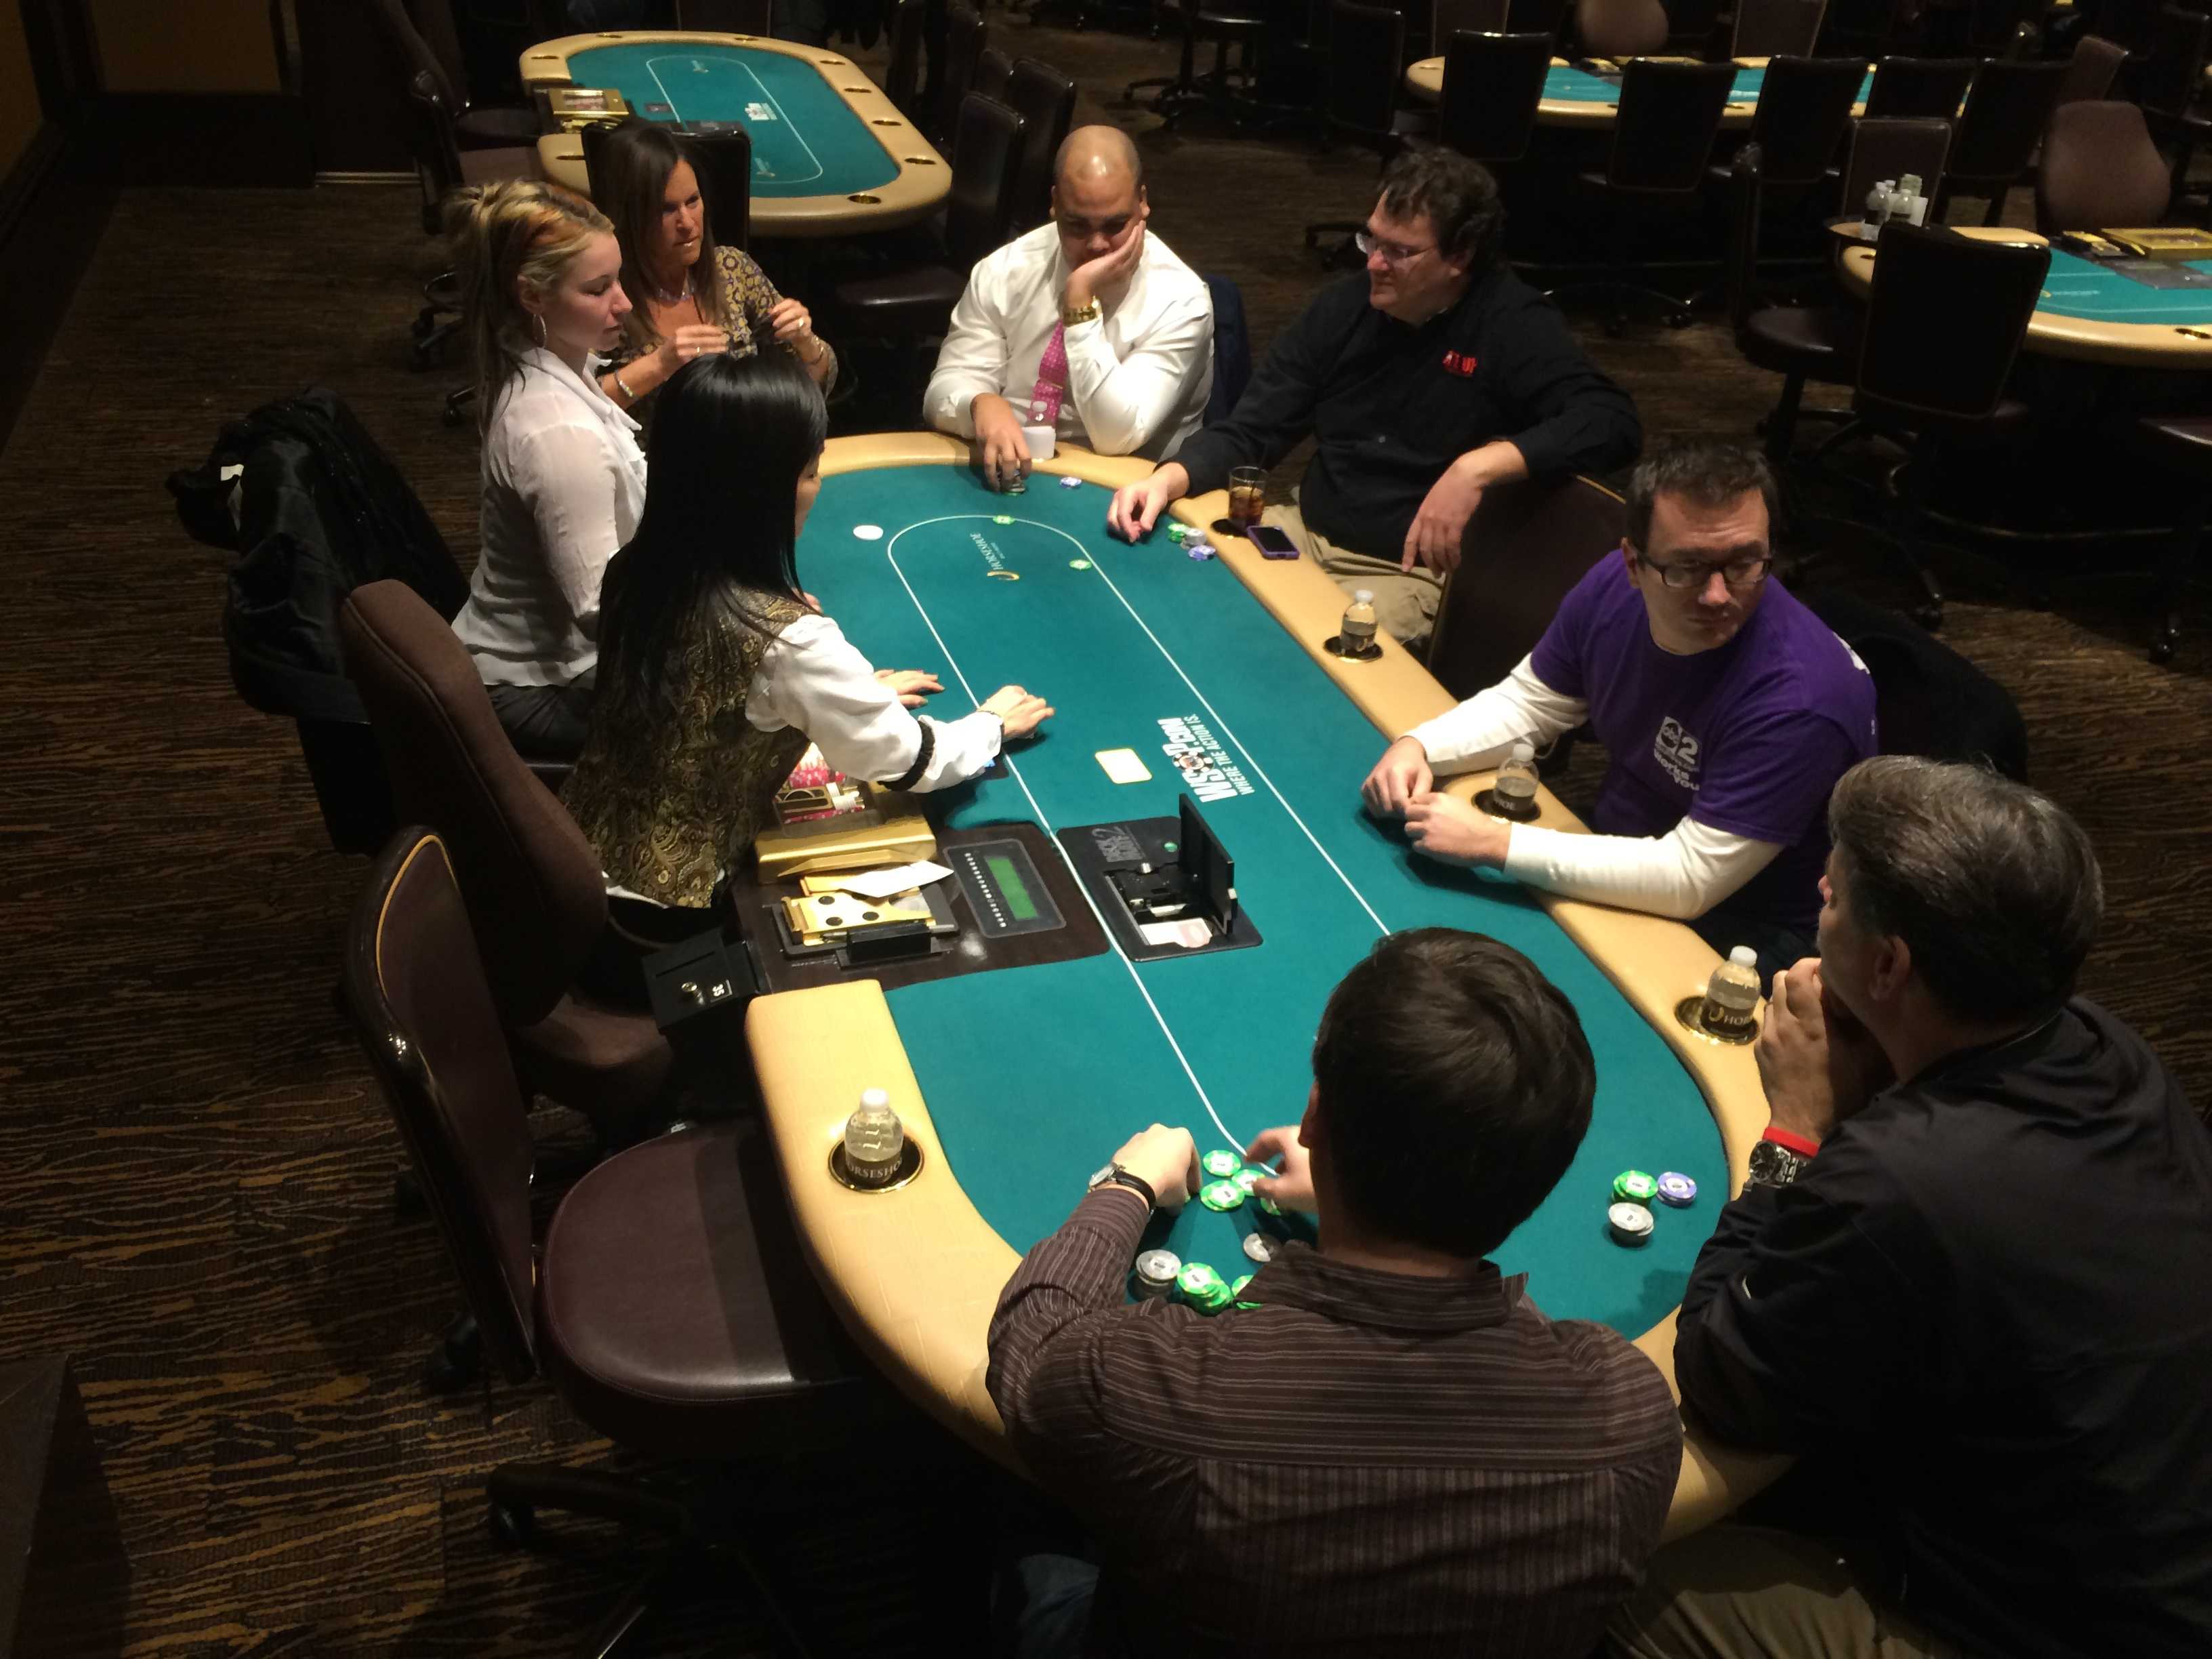 horseshoe casino world series of poker